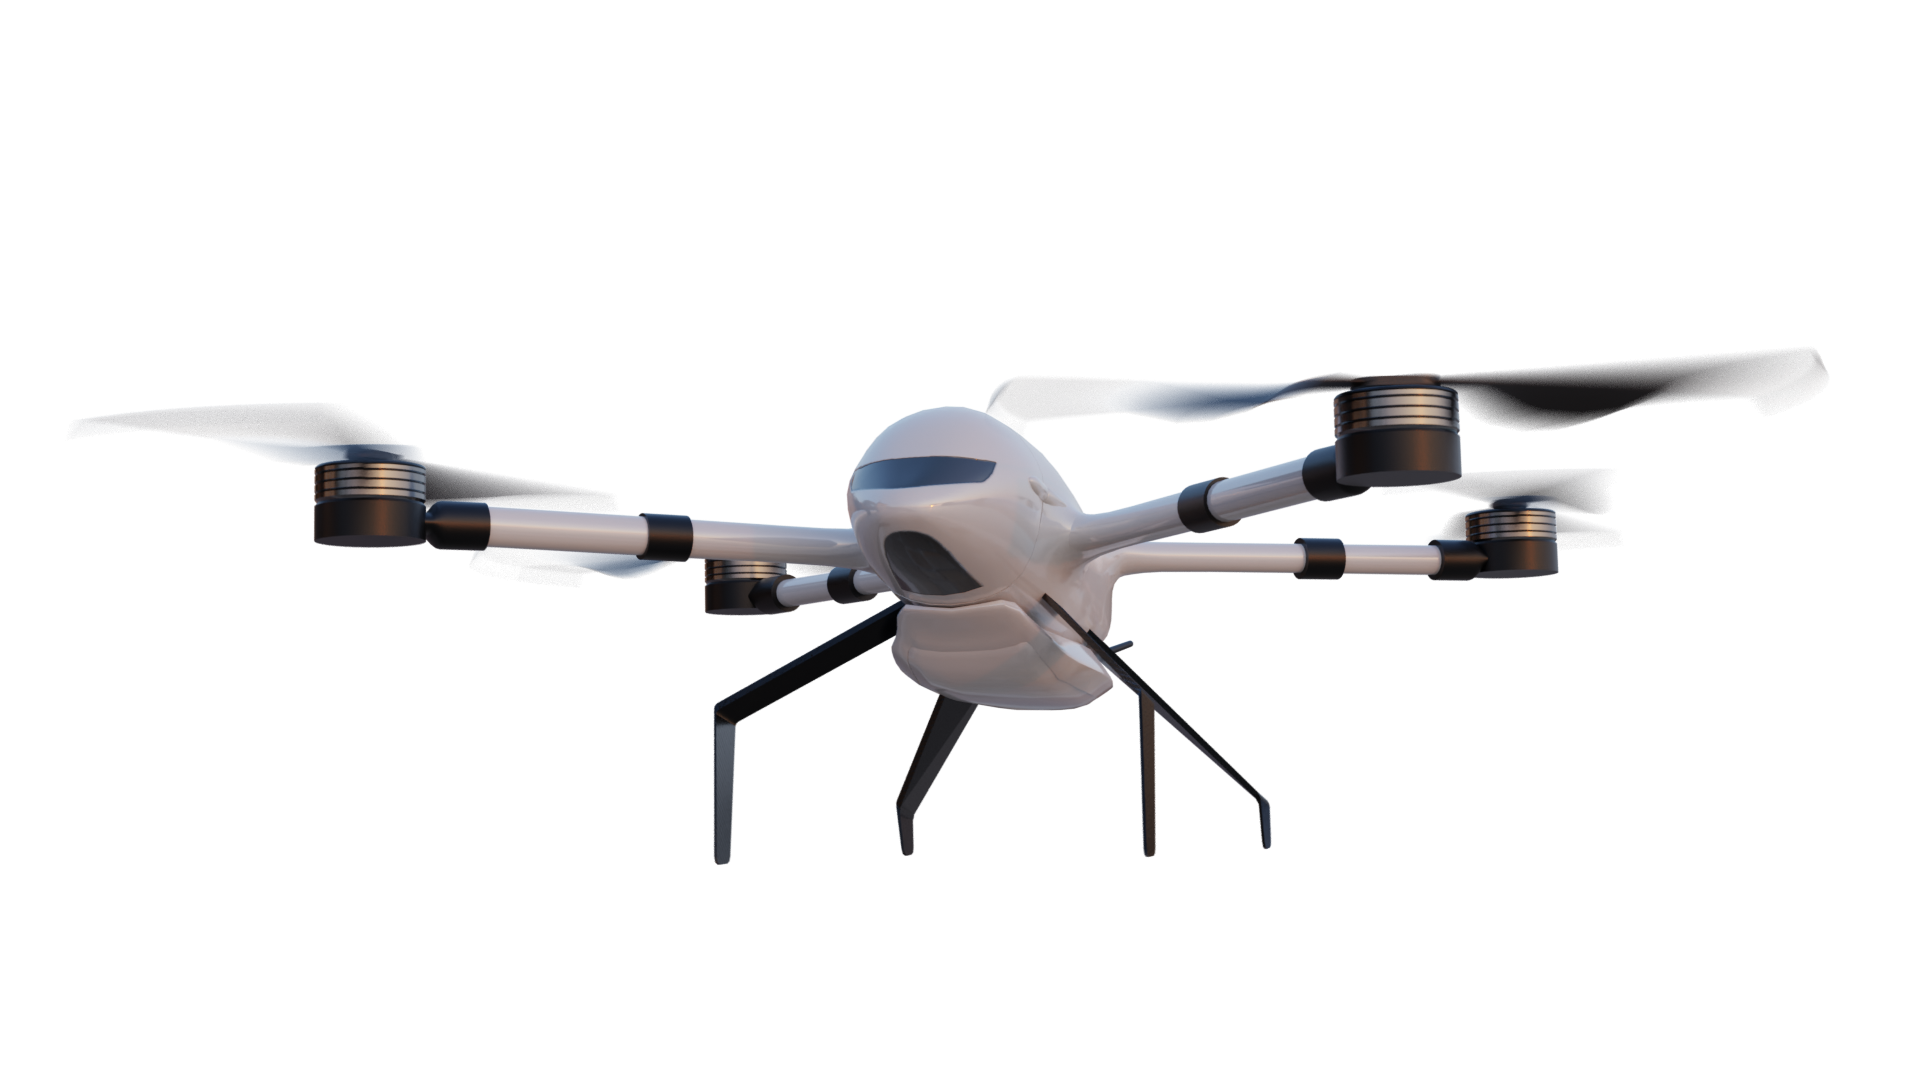 Livraison par drone Beluga pour yachts pour l'entreprise Drones for Yachts